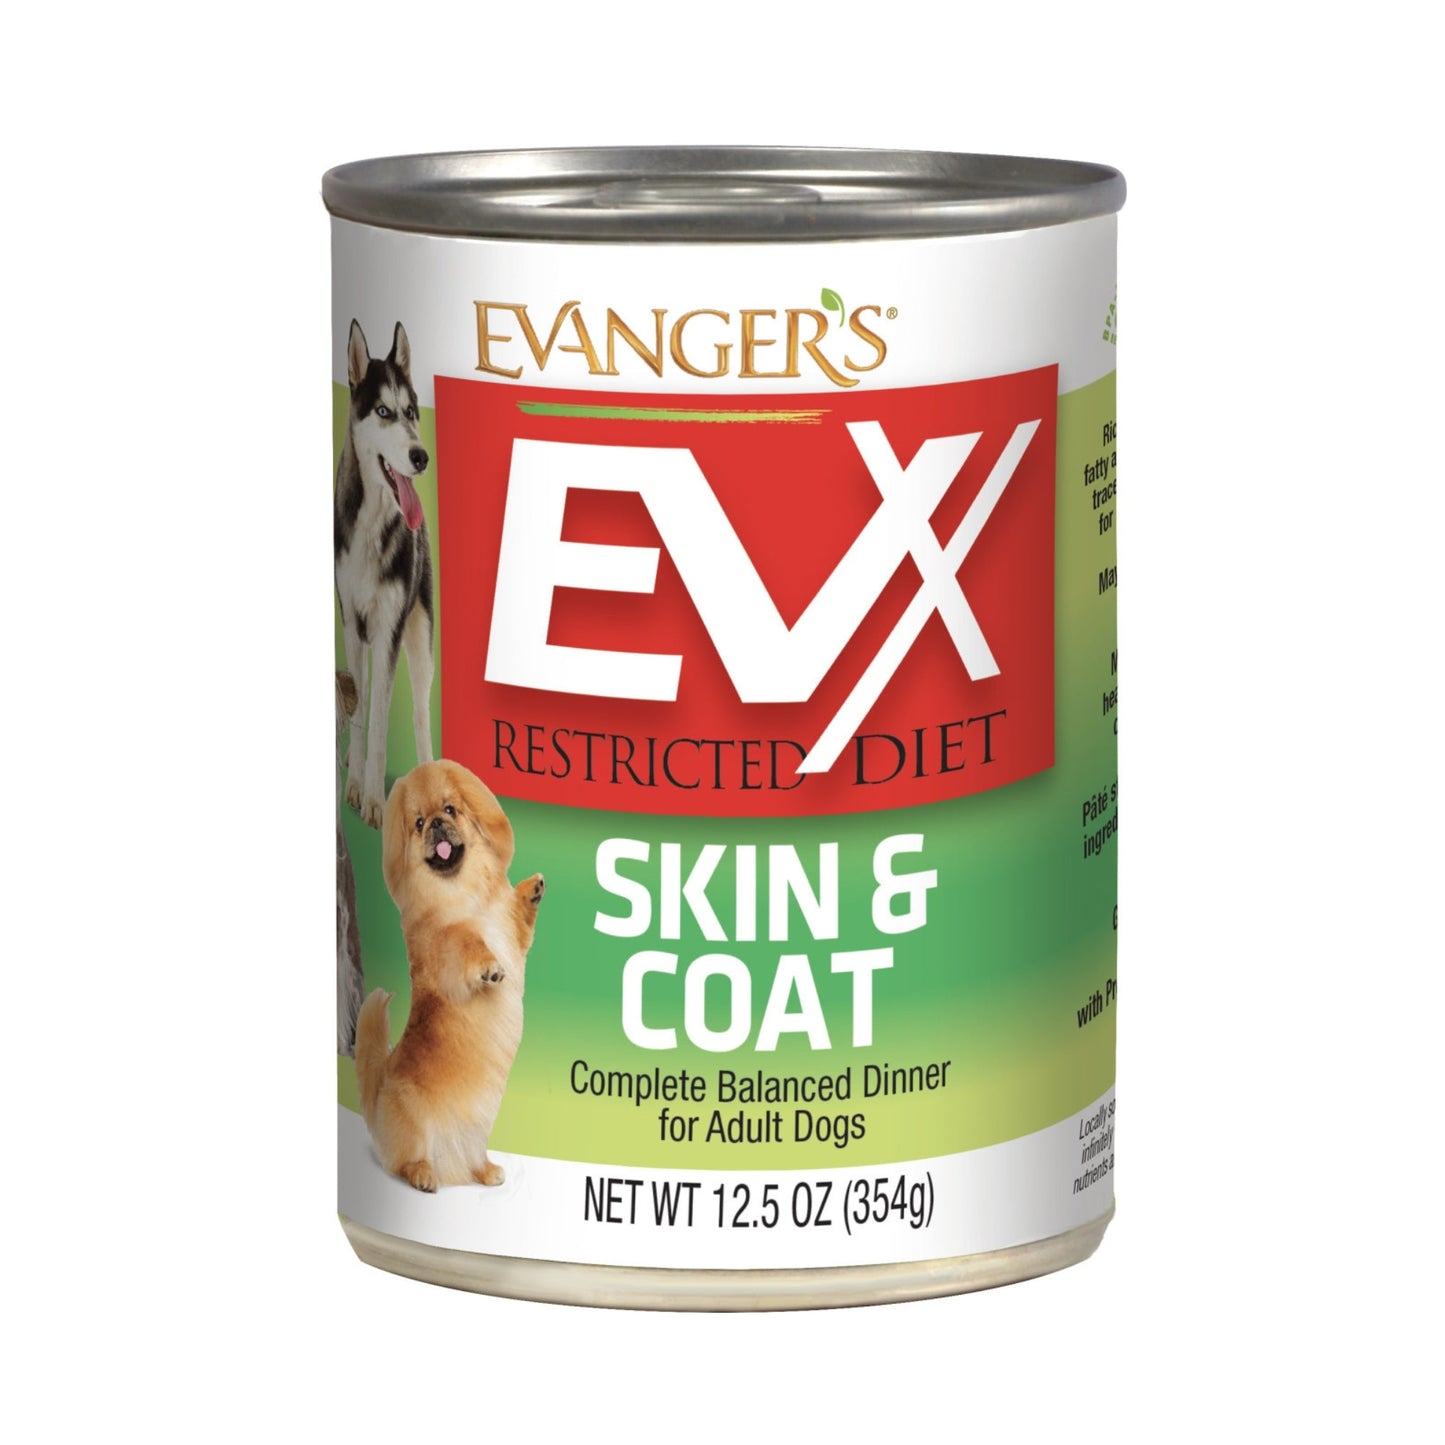 Evanger's EVx Restricted Diet Skin & Coat Wet Dog Food 12.5oz. (Case of 12)